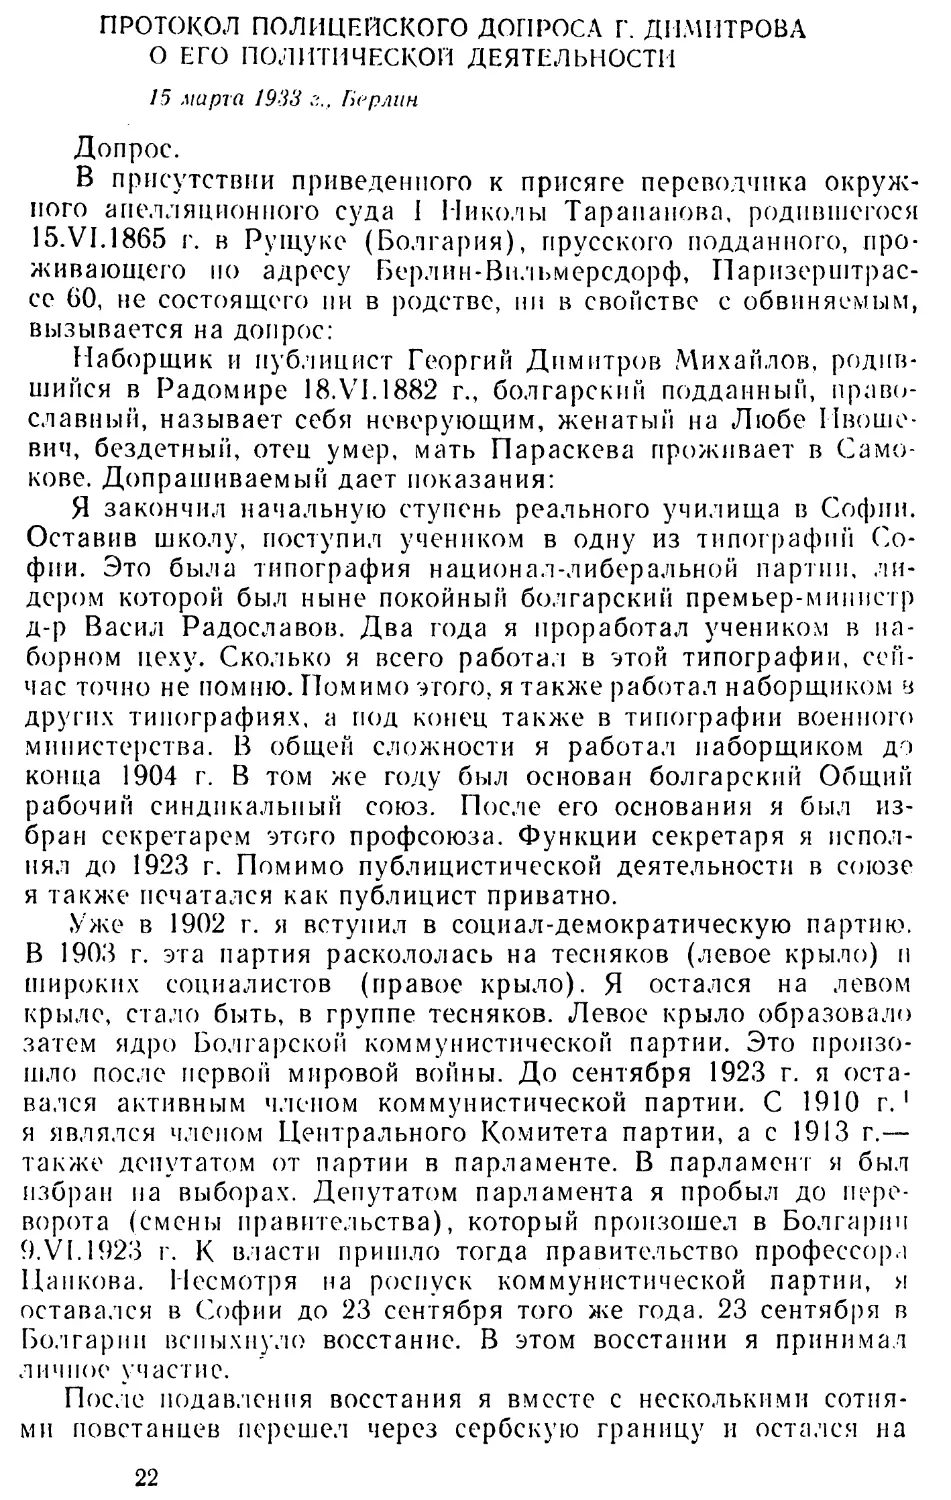 Протокол полицейского допроса Г. Димитрова о его политической деятельности. 15 марта 1933 г